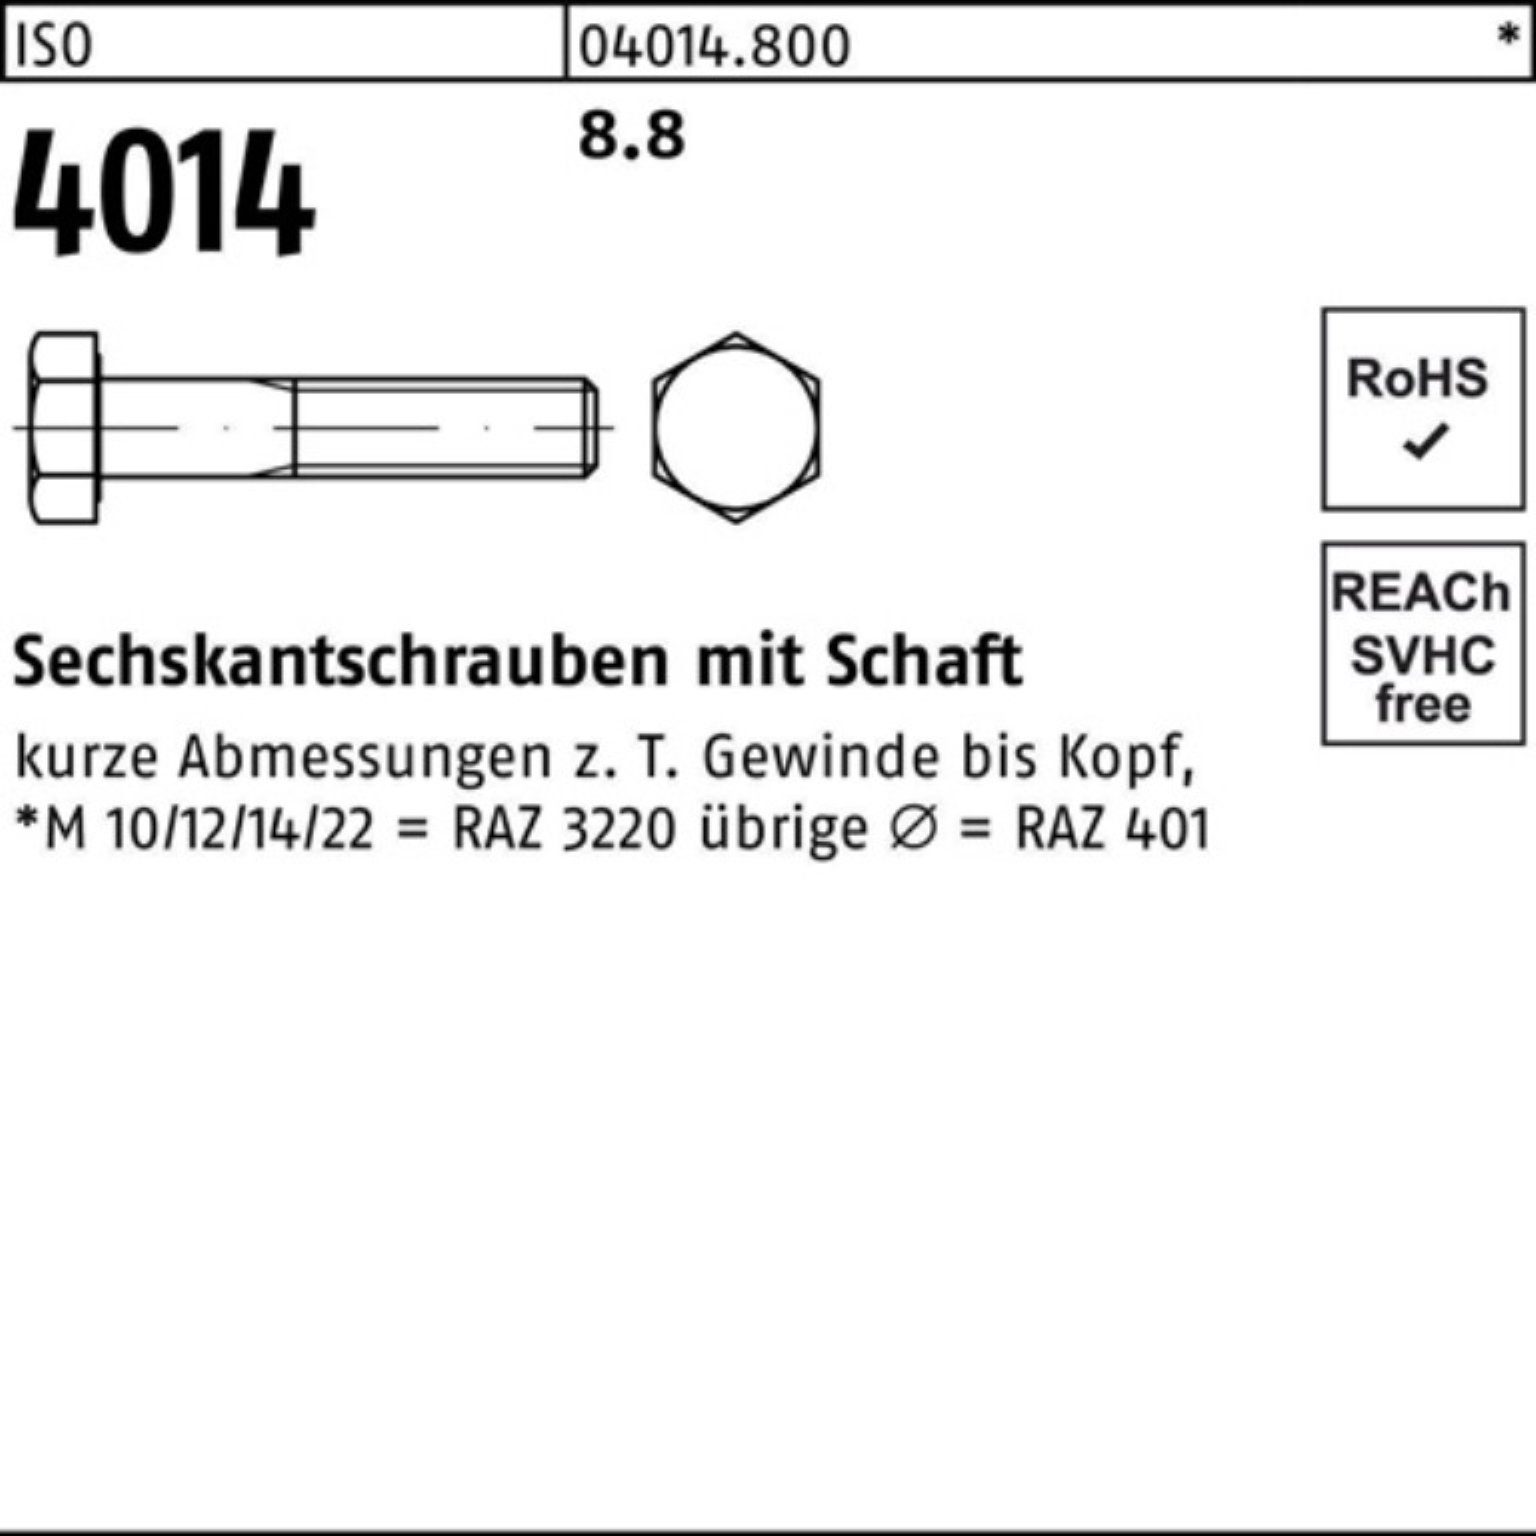 Bufab Sechskantschraube 100er Pack Sechskantschraube 1 4014 190 M18x Stück ISO ISO Schaft 8.8